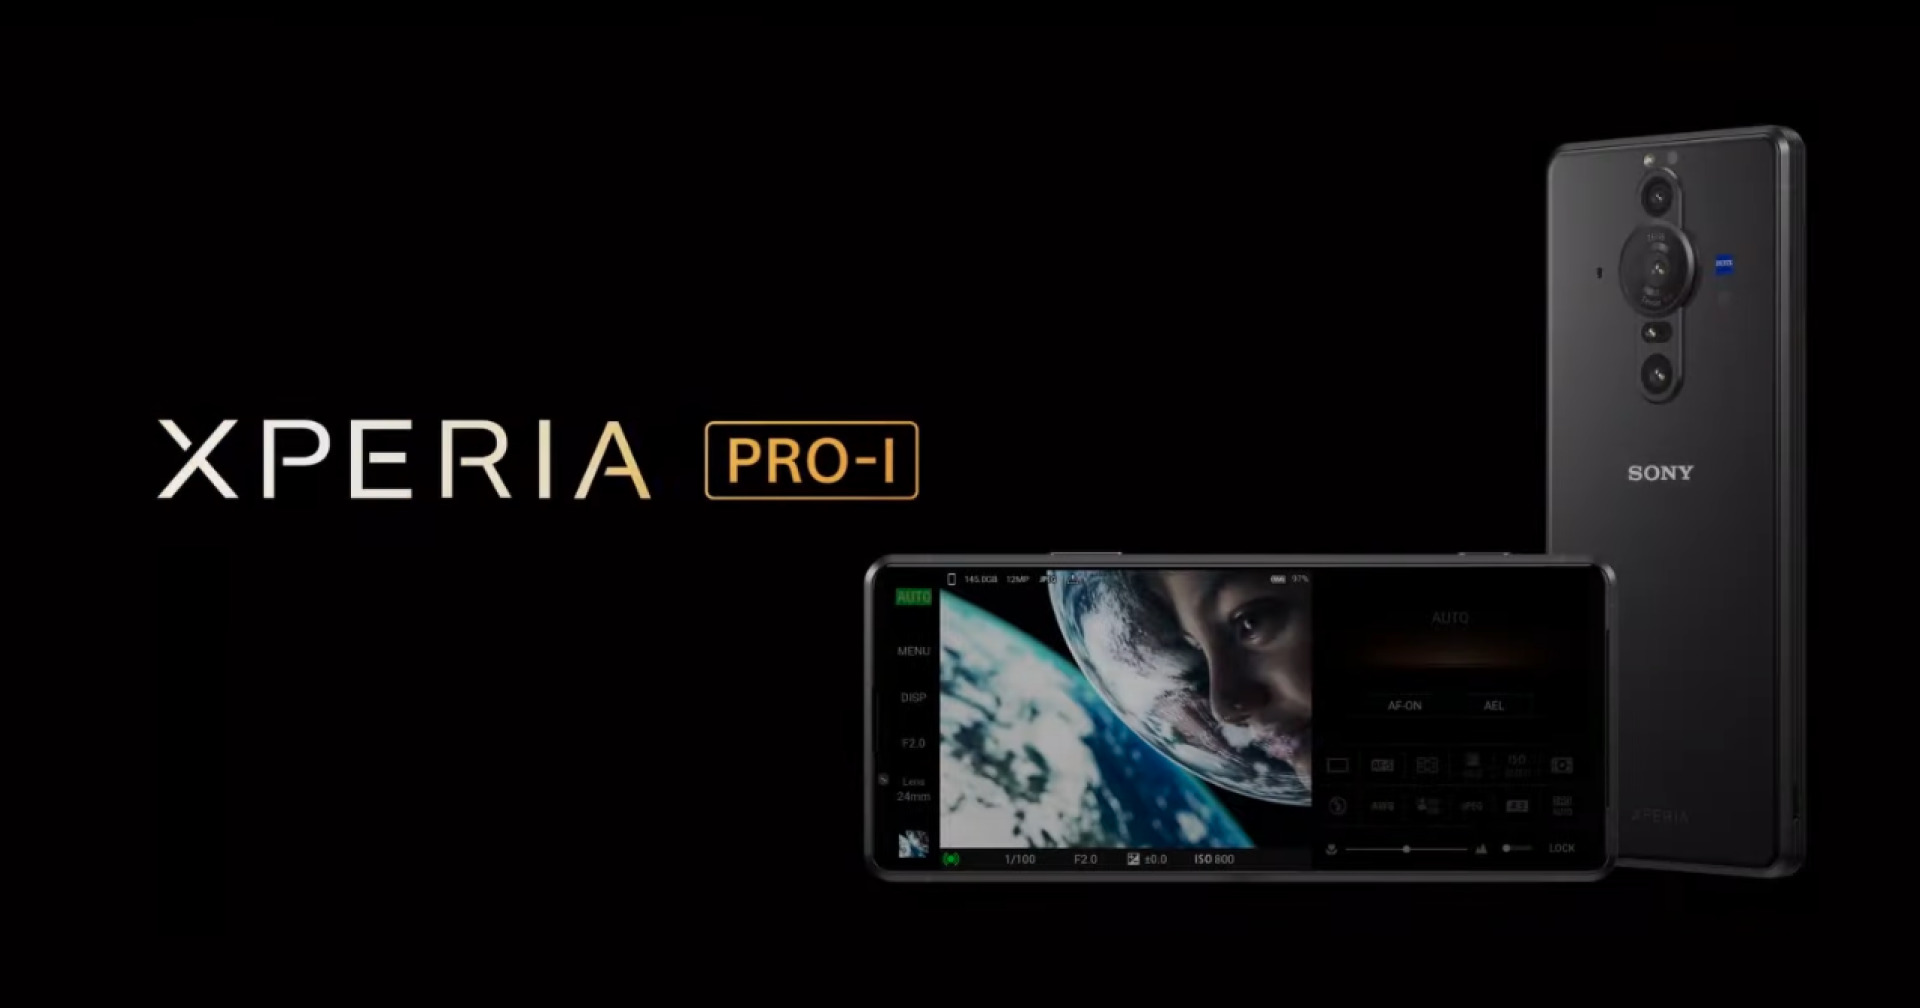 เปิดตัว Sony Xperia Pro-I มือถือกล้องเซนเซอร์ 1 นิ้ว ราคาเหยียบ 6 หมื่นบาท!